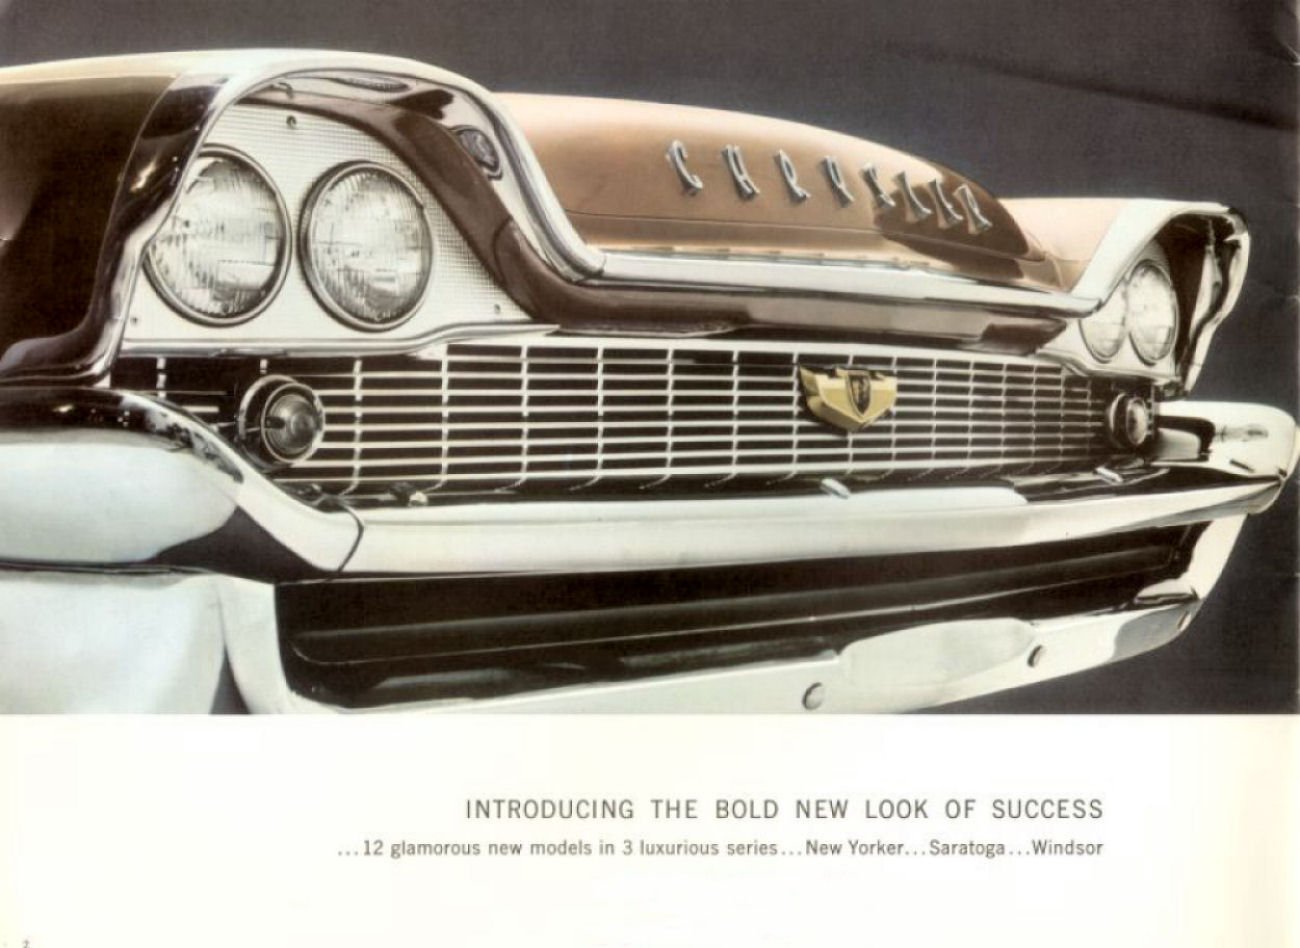 1958 Chrysler Full Line-02